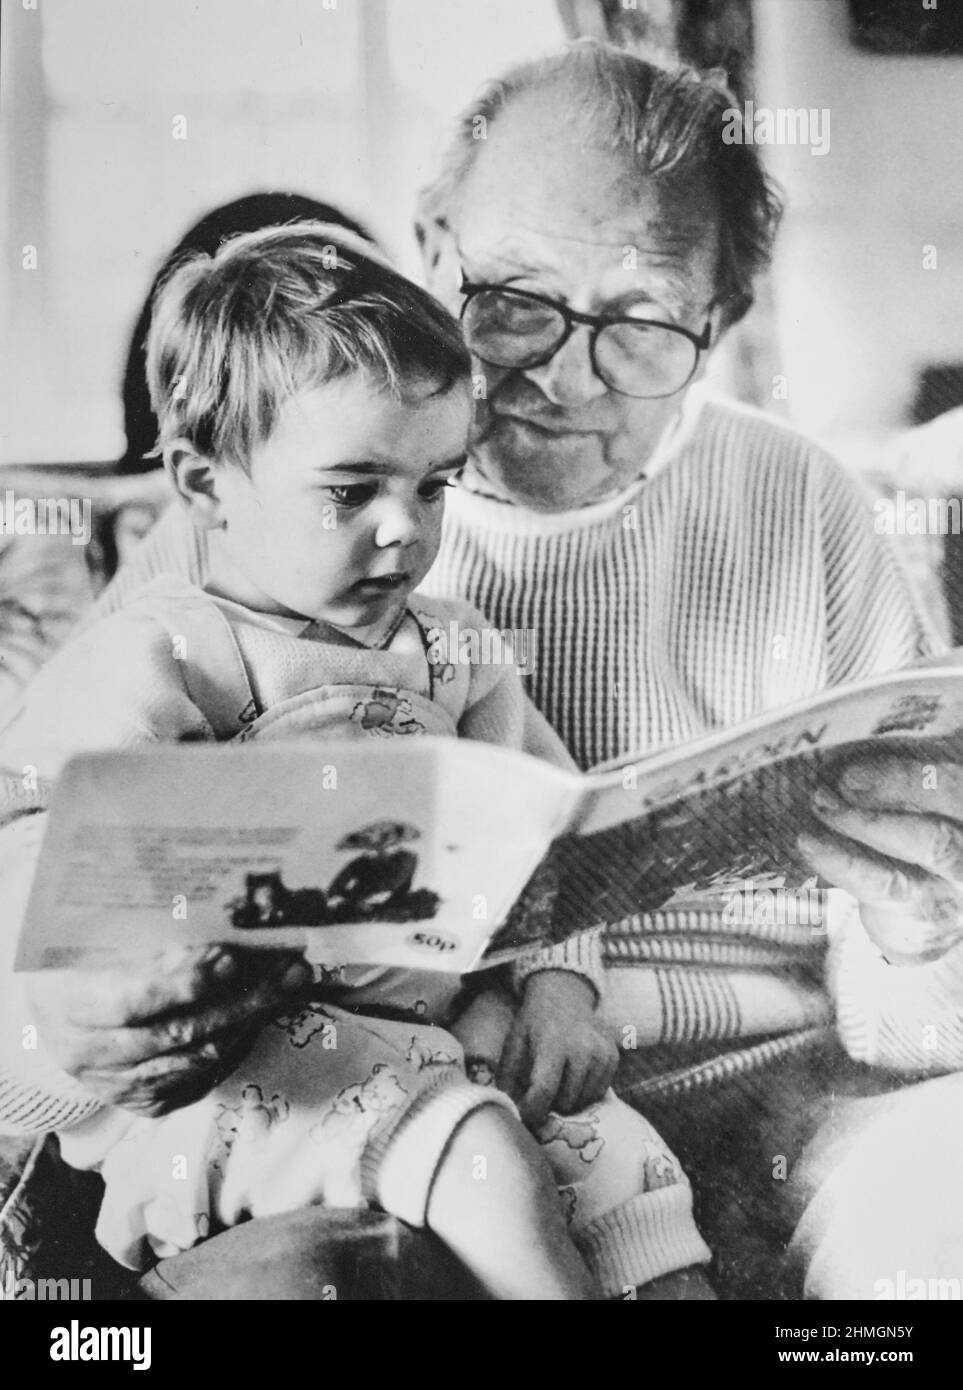 Jeune fille d'environ deux ans lisant un livre avec son grand-père 1990s Photographie prise par Simon Dack Banque D'Images